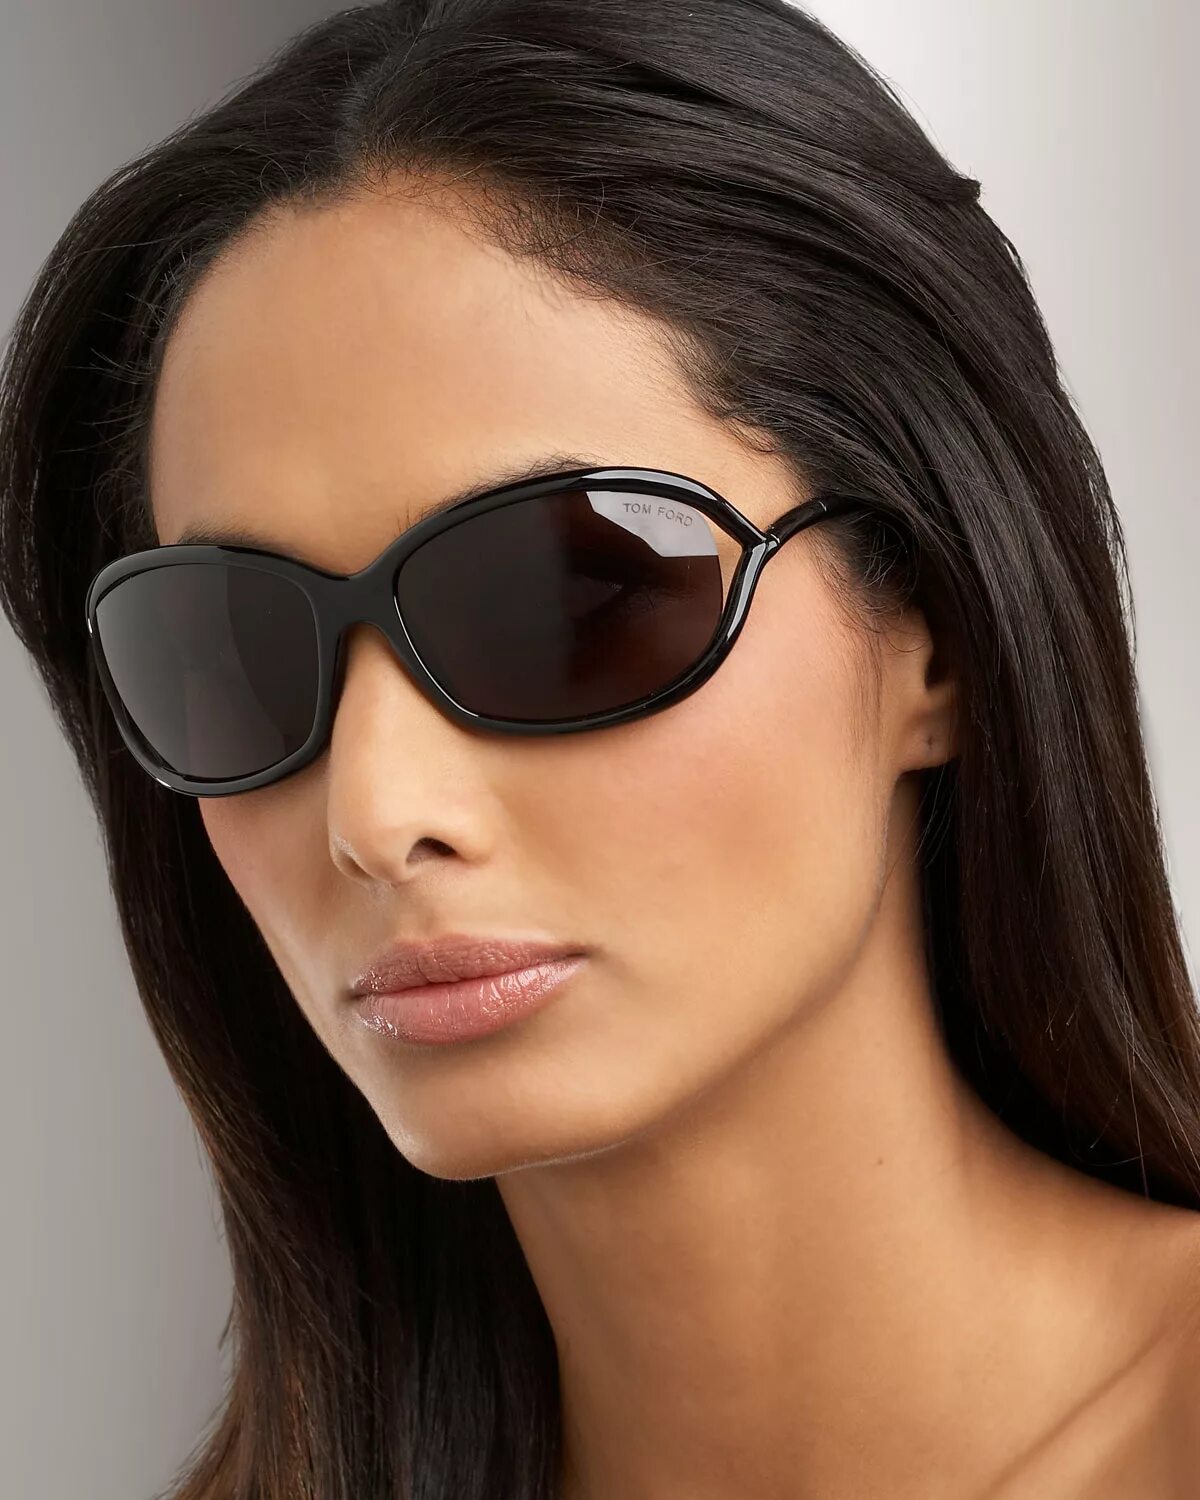 Купить хорошие солнцезащитные очки